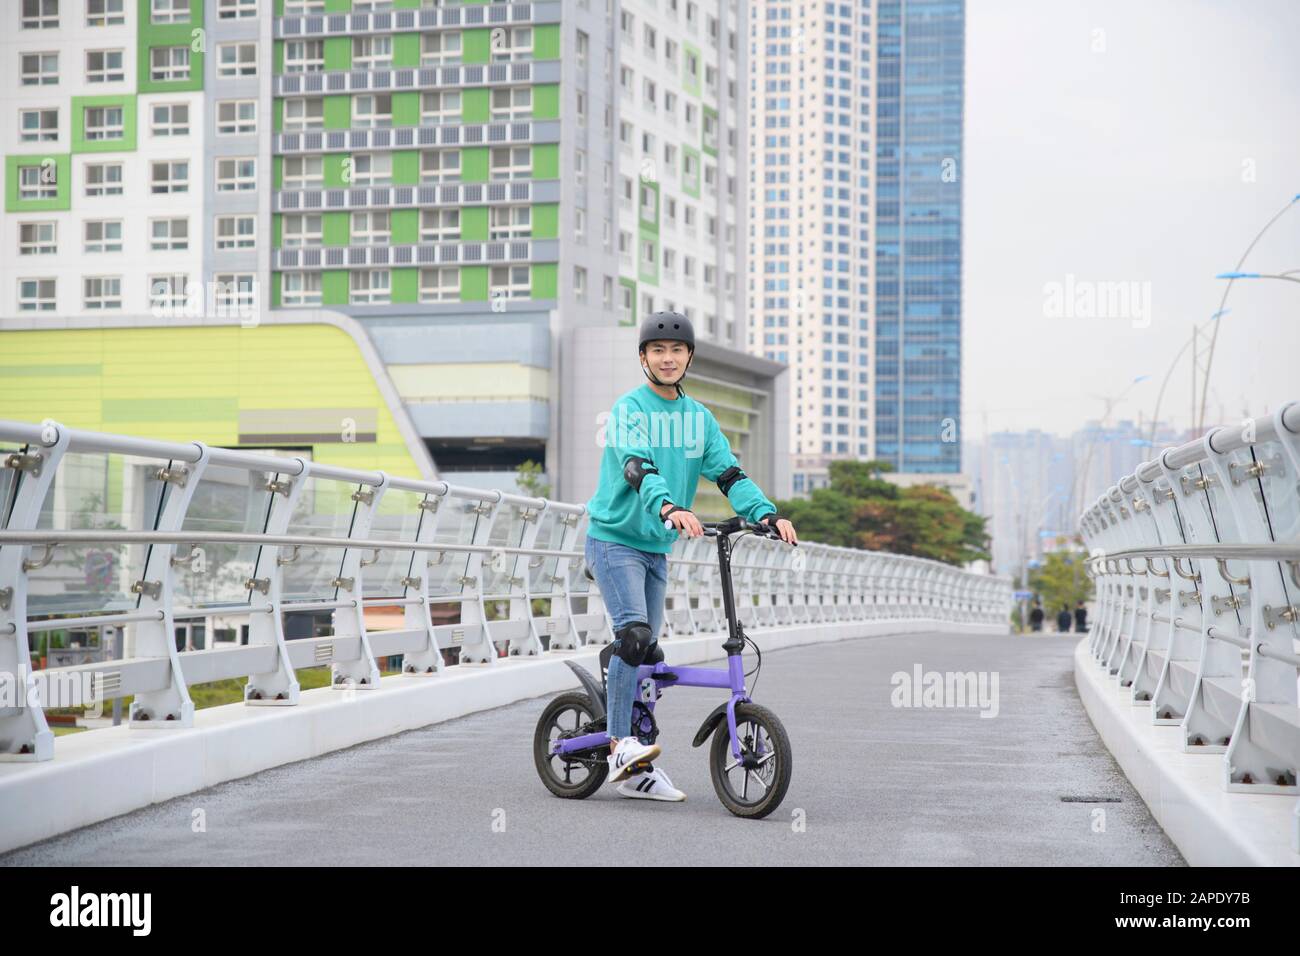 Concept de vie de mobilité intelligente, jeune homme utilisant une voiture électrique, véhicule électrique 147 Banque D'Images